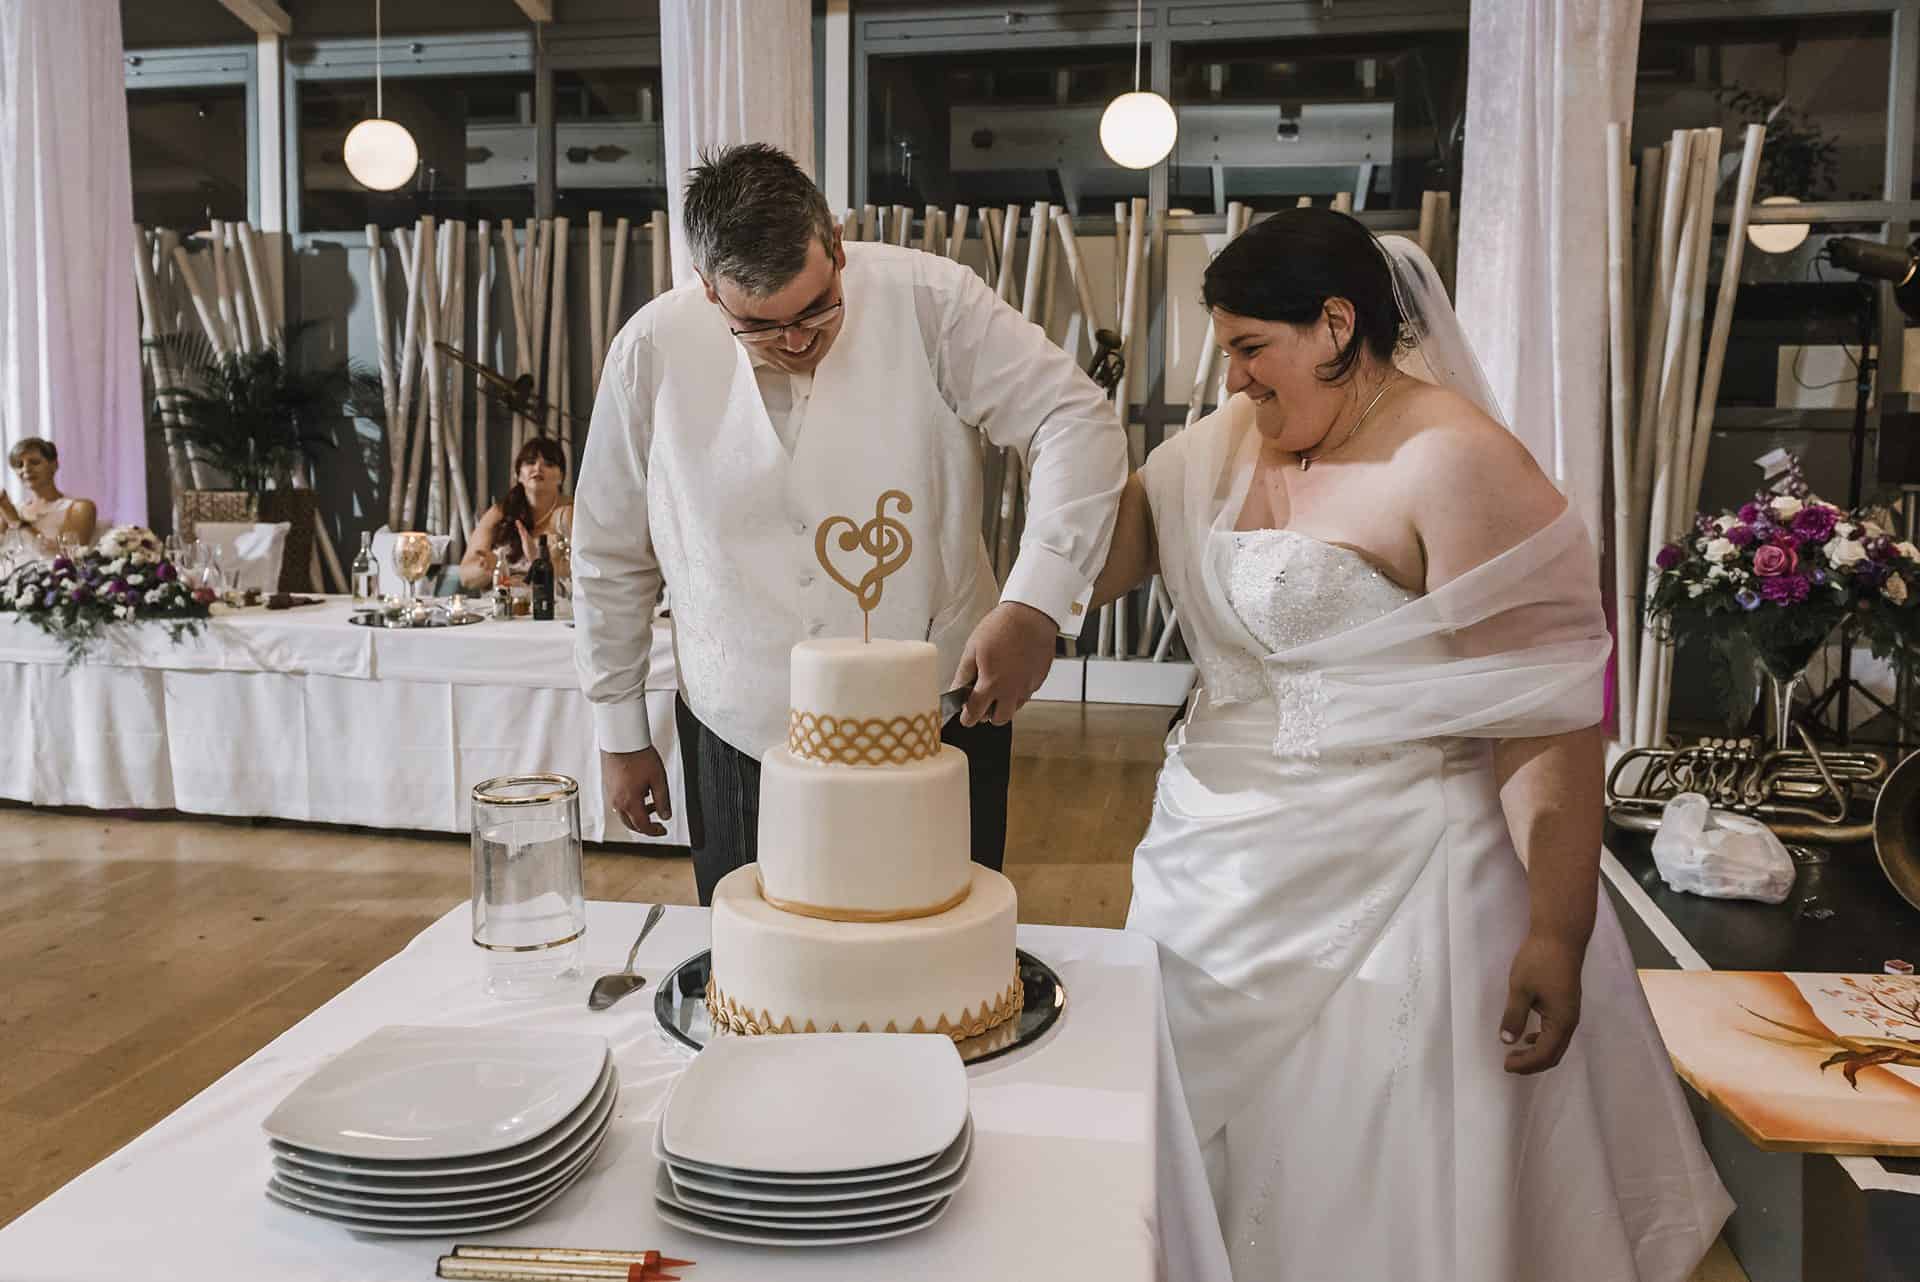 Eine Braut und ein Bräutigam schneiden ihre Hochzeitstorte an.